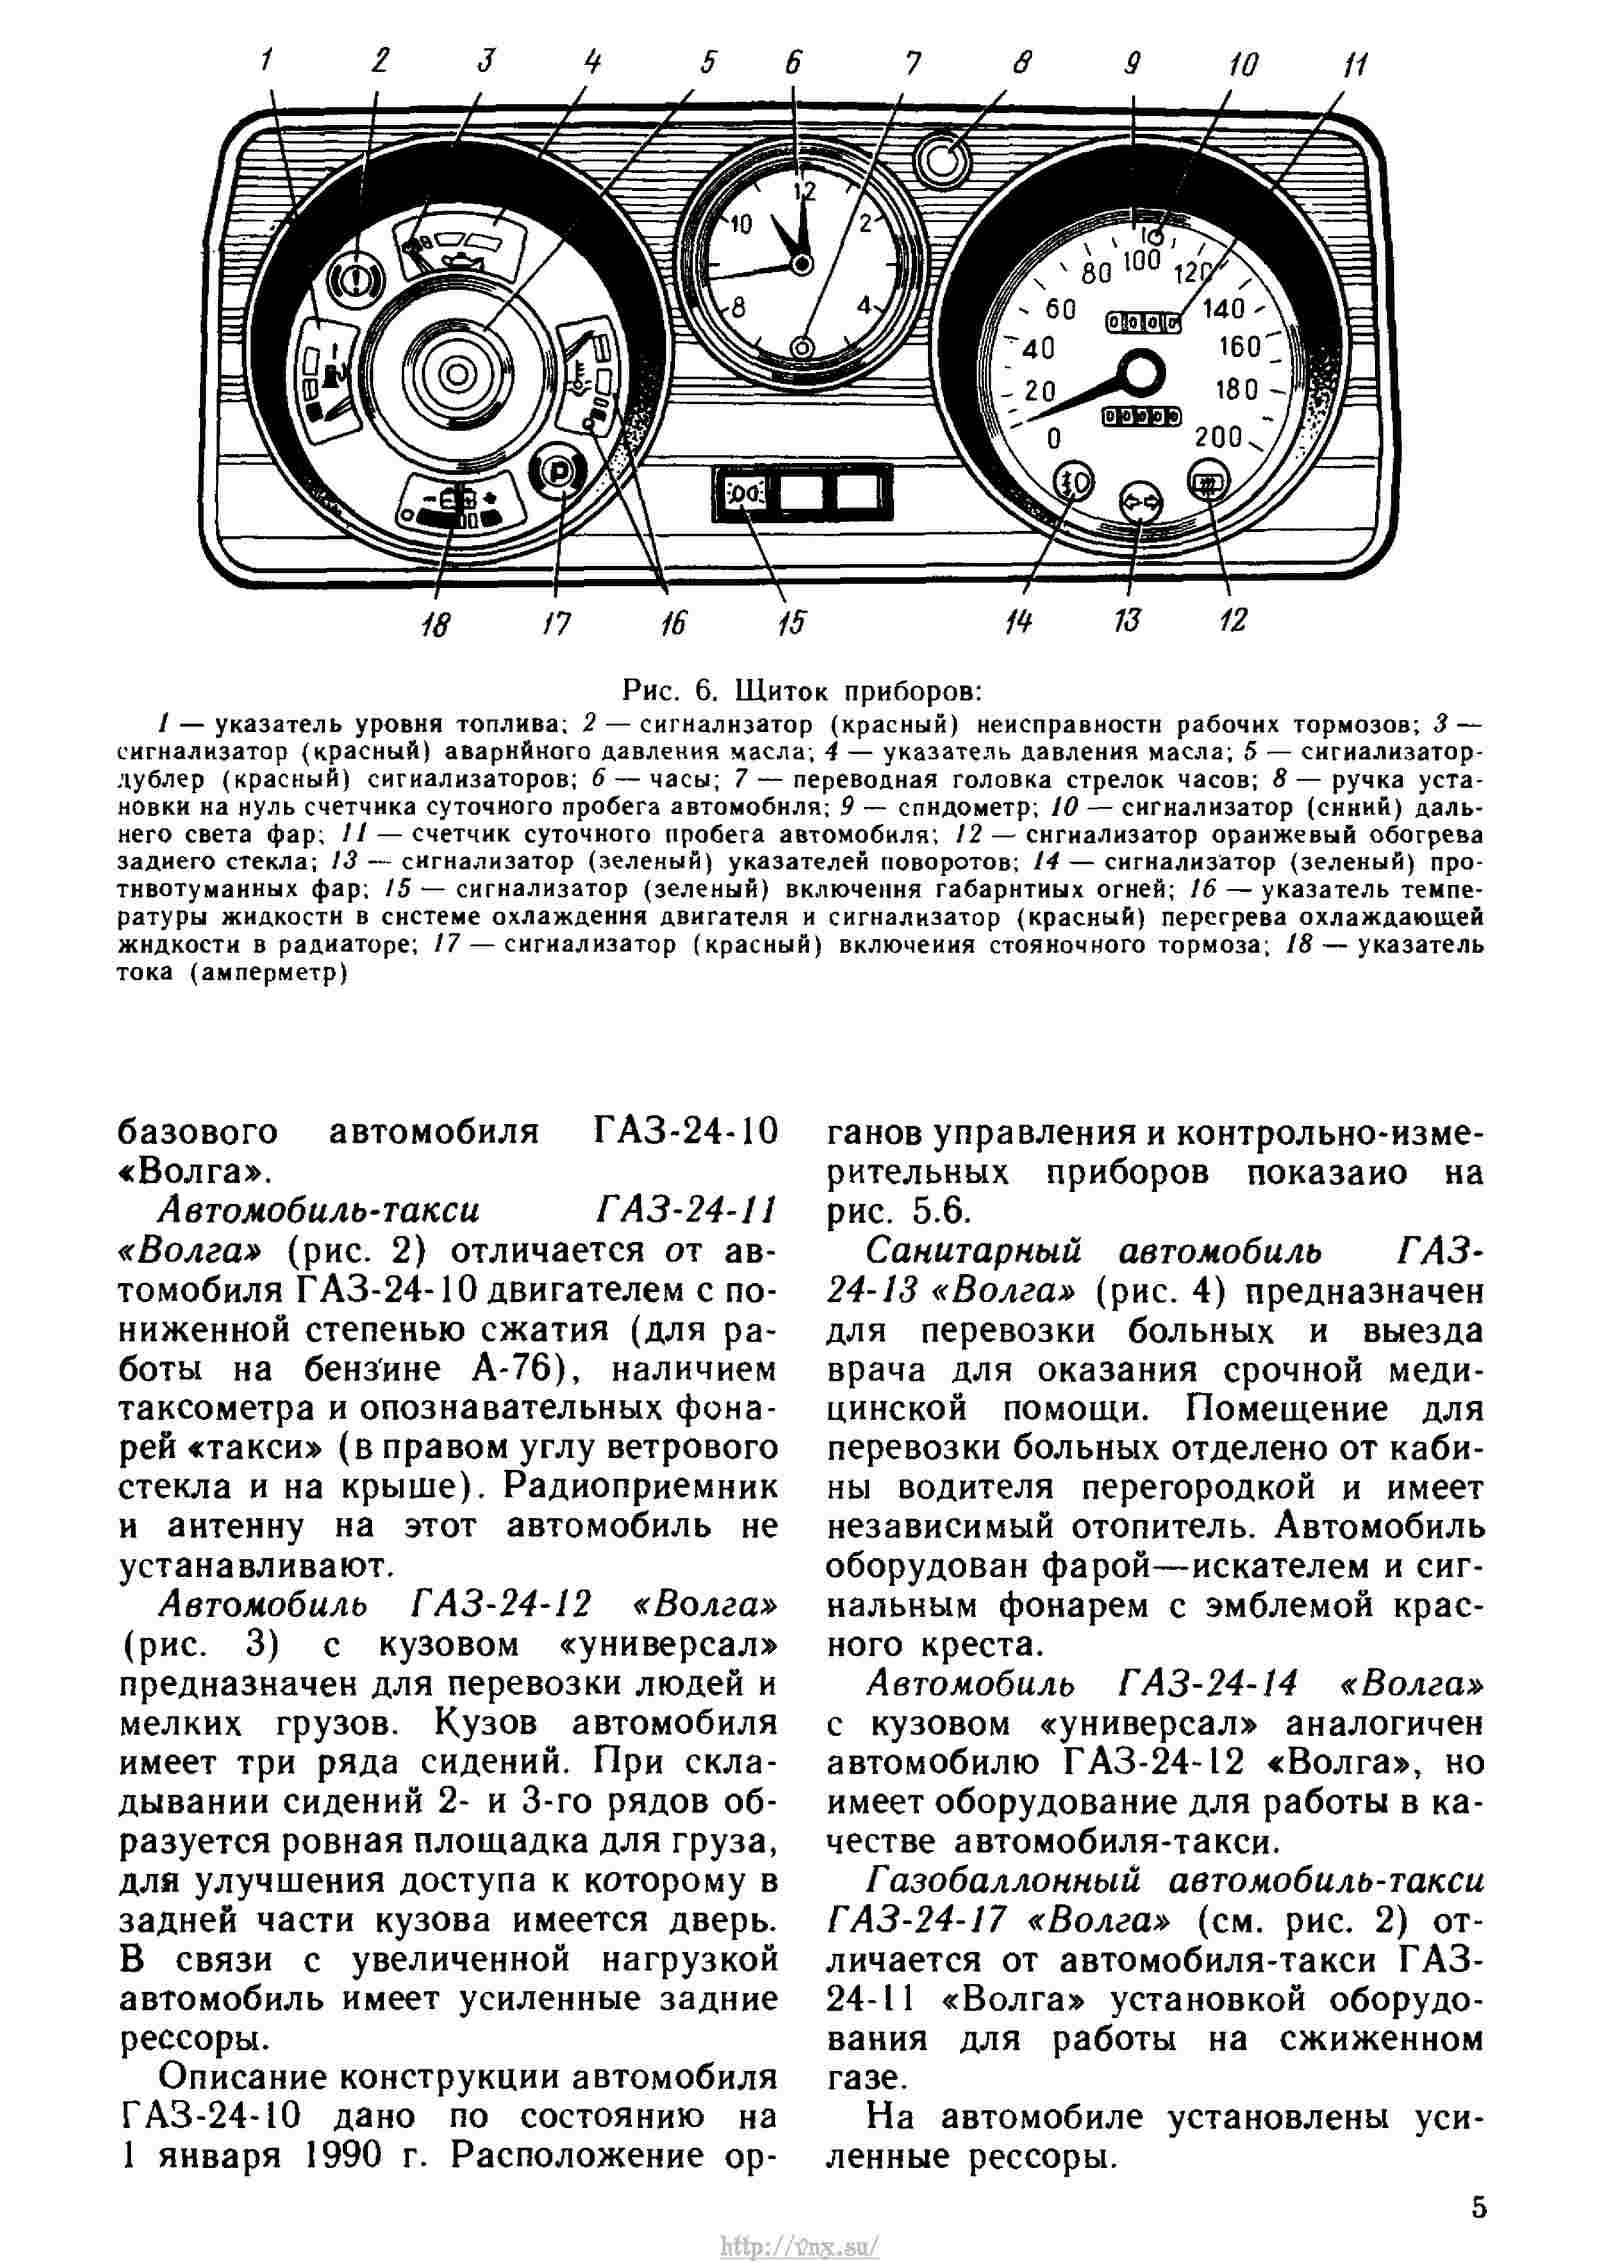 Схема приборов ГАЗ-24-10